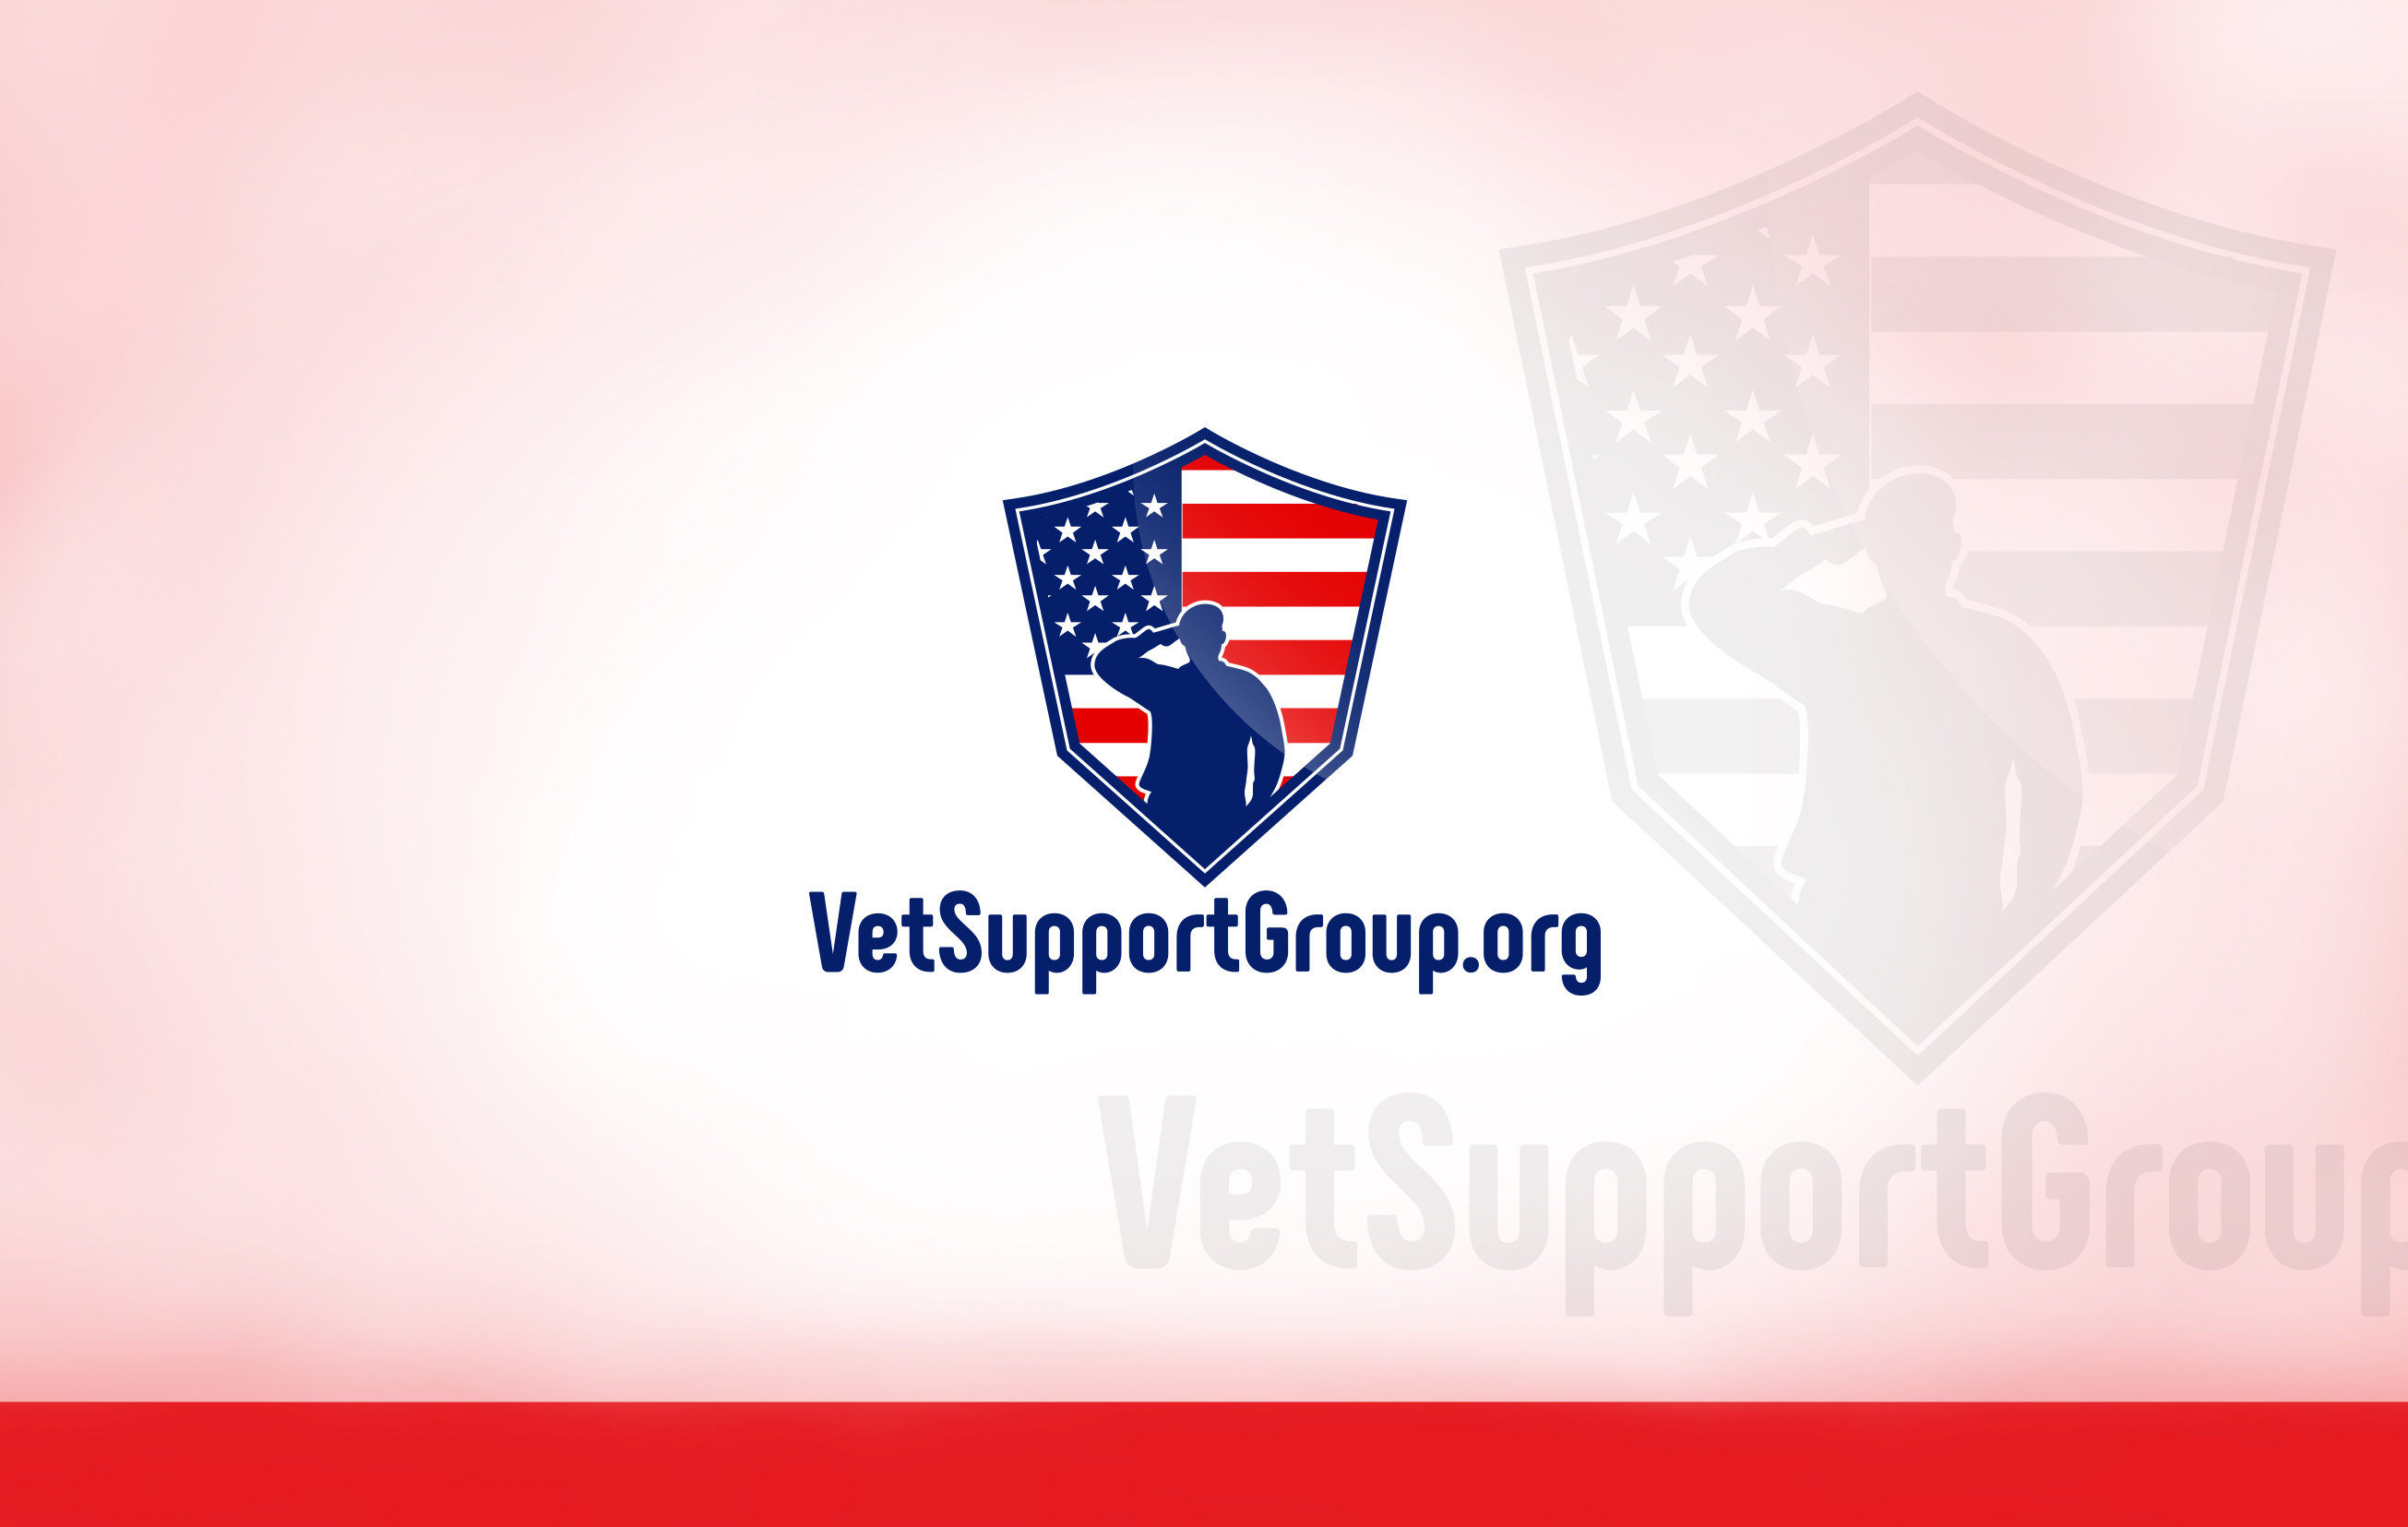 Vet Support Group Design #4